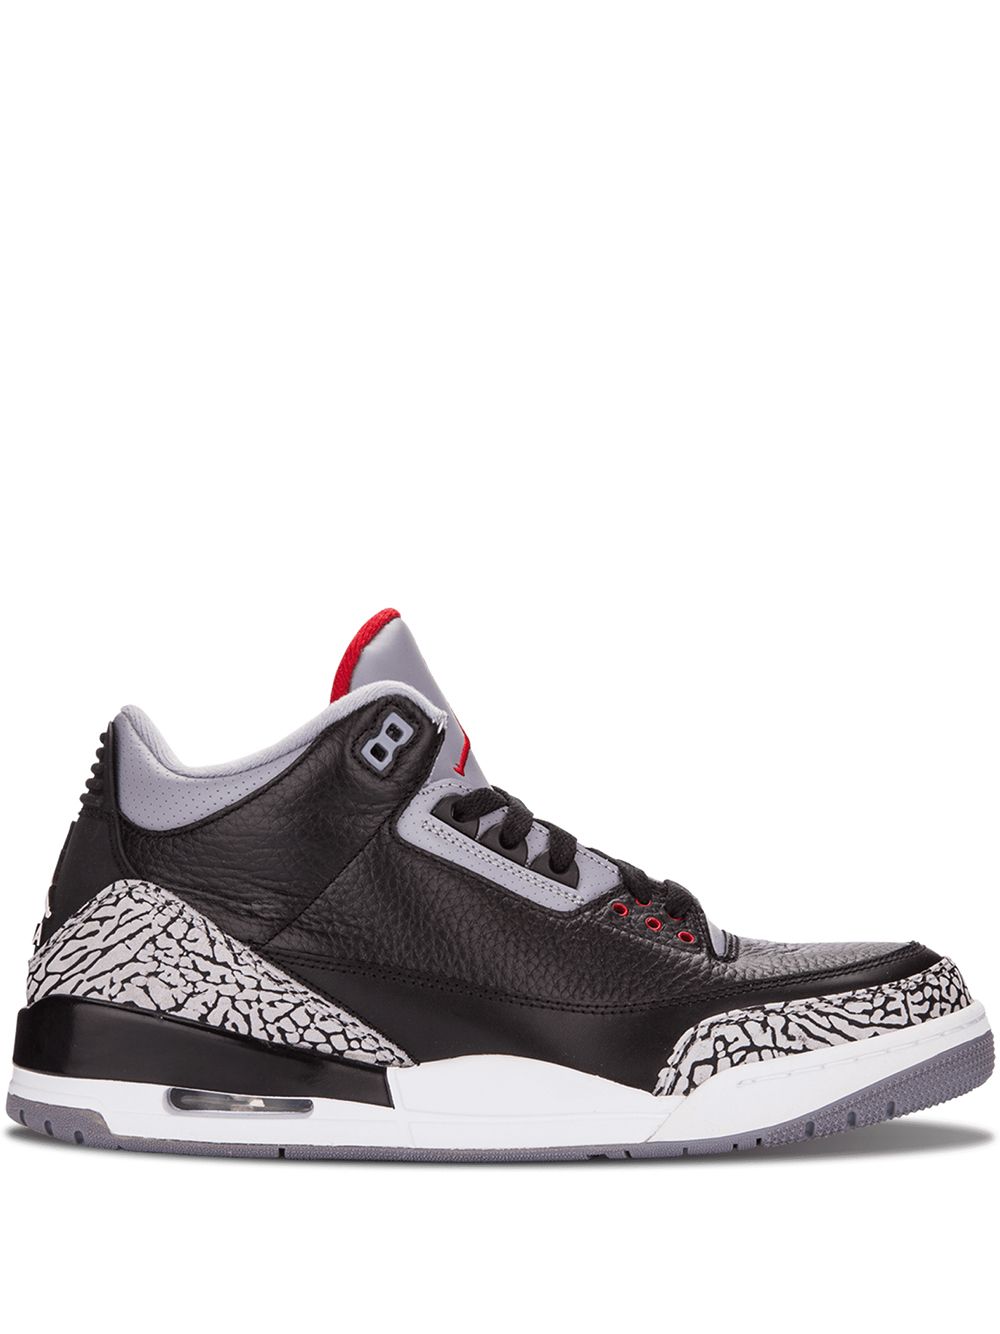 Jordan Air Jordan 3 Retro "Black Cement" sneakers